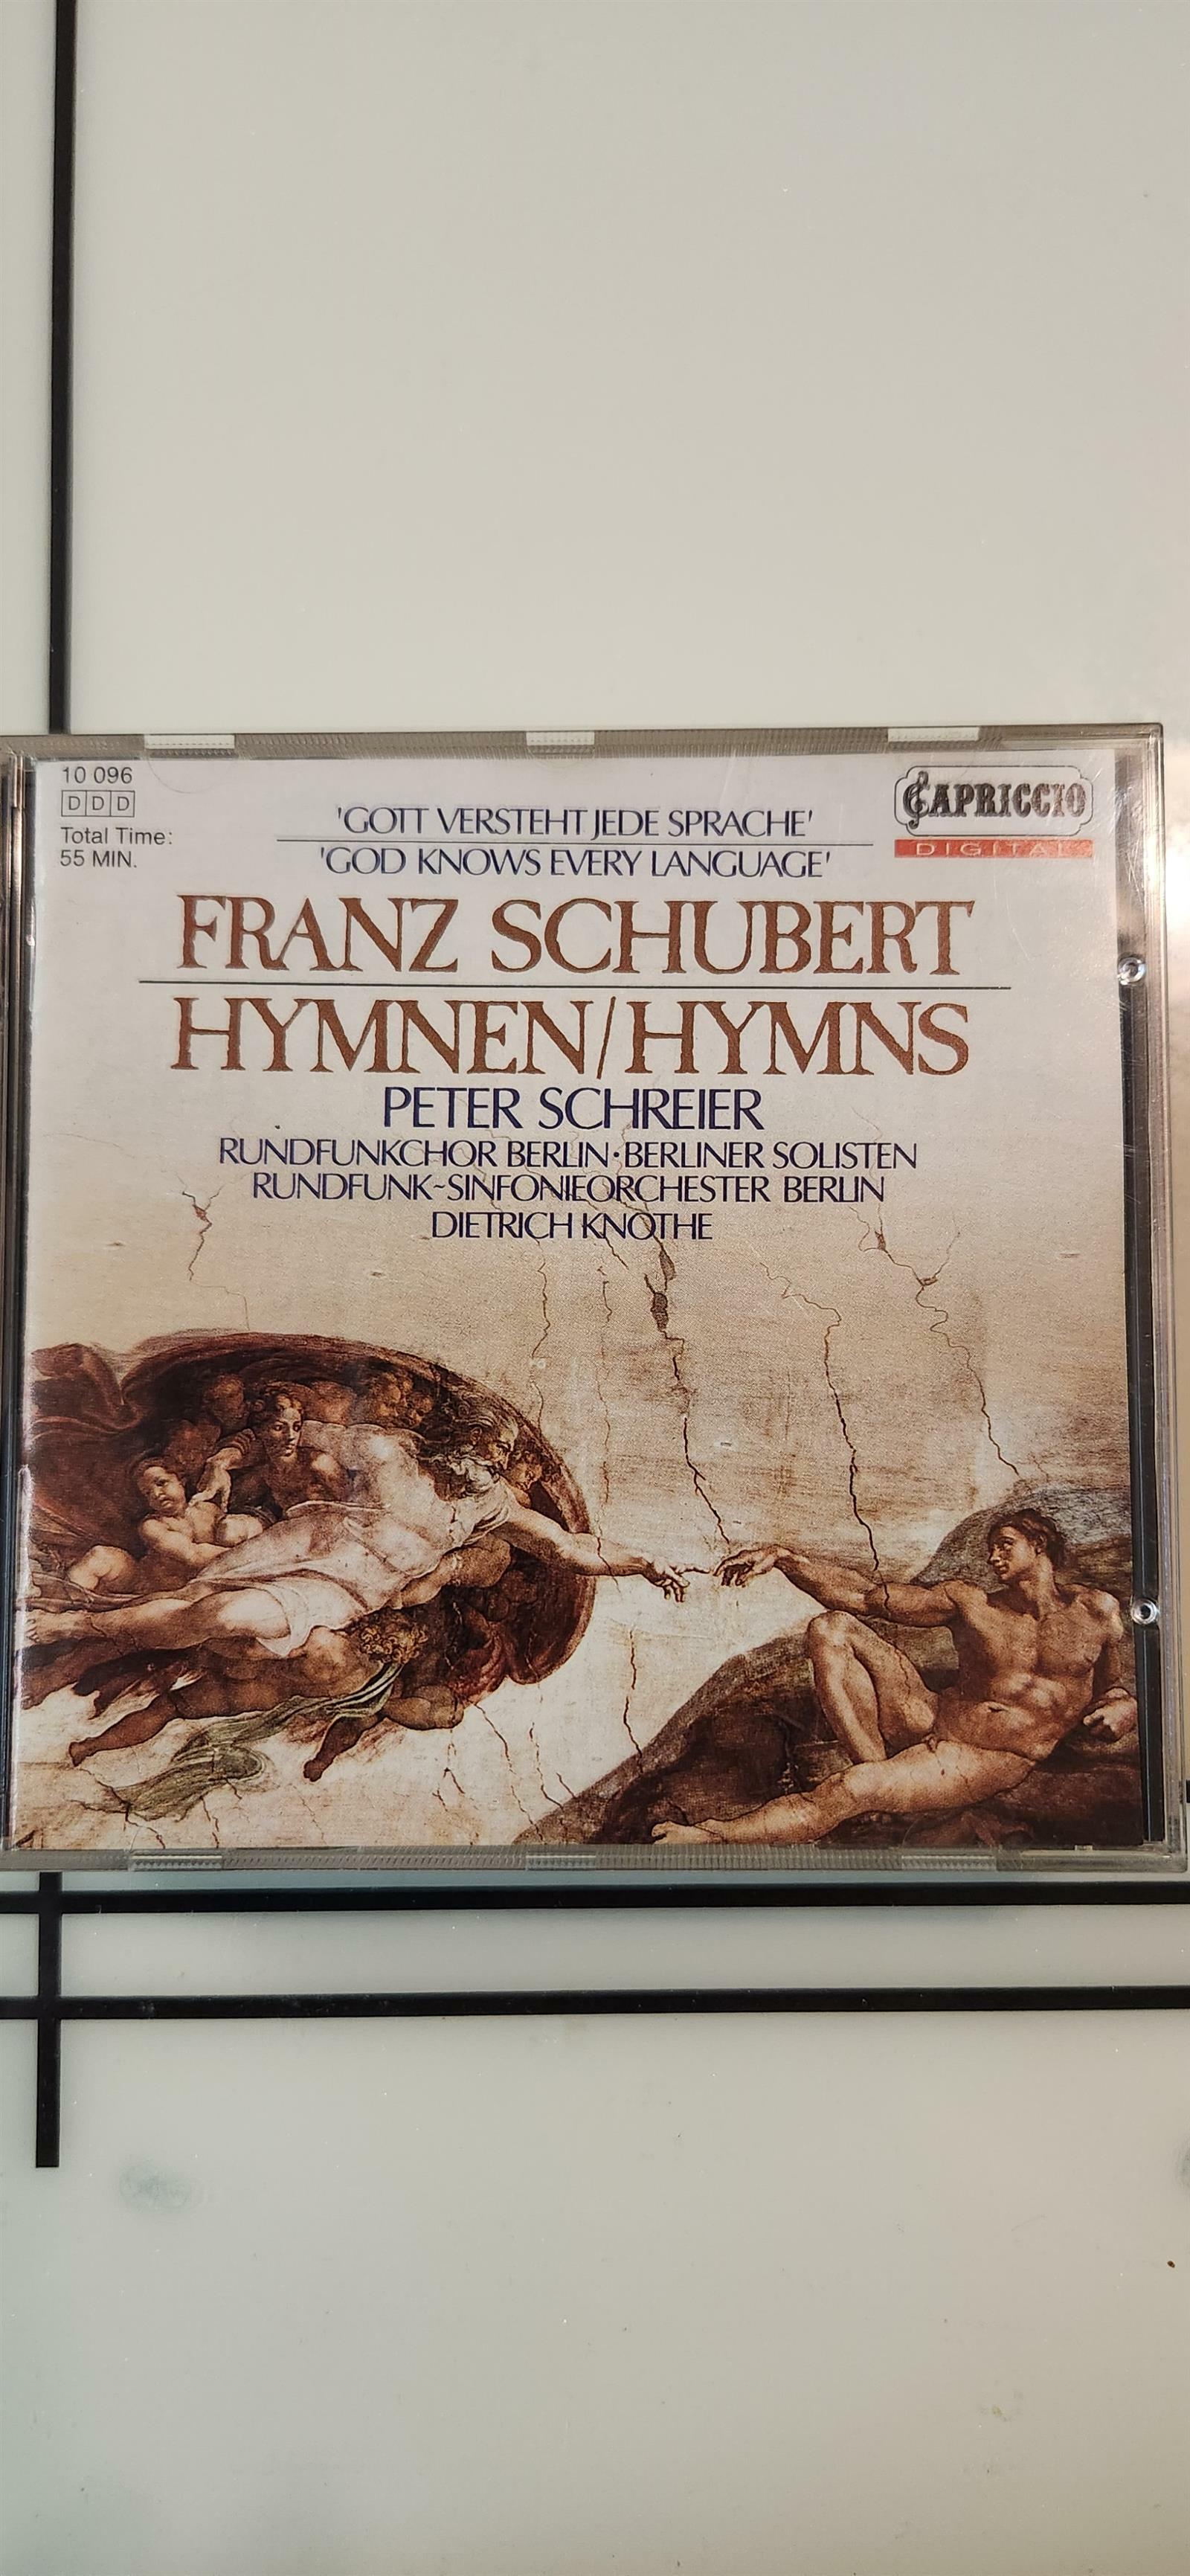 [중고] 수입)  슈베르트  hymnen/hymns  Peter Schreier 